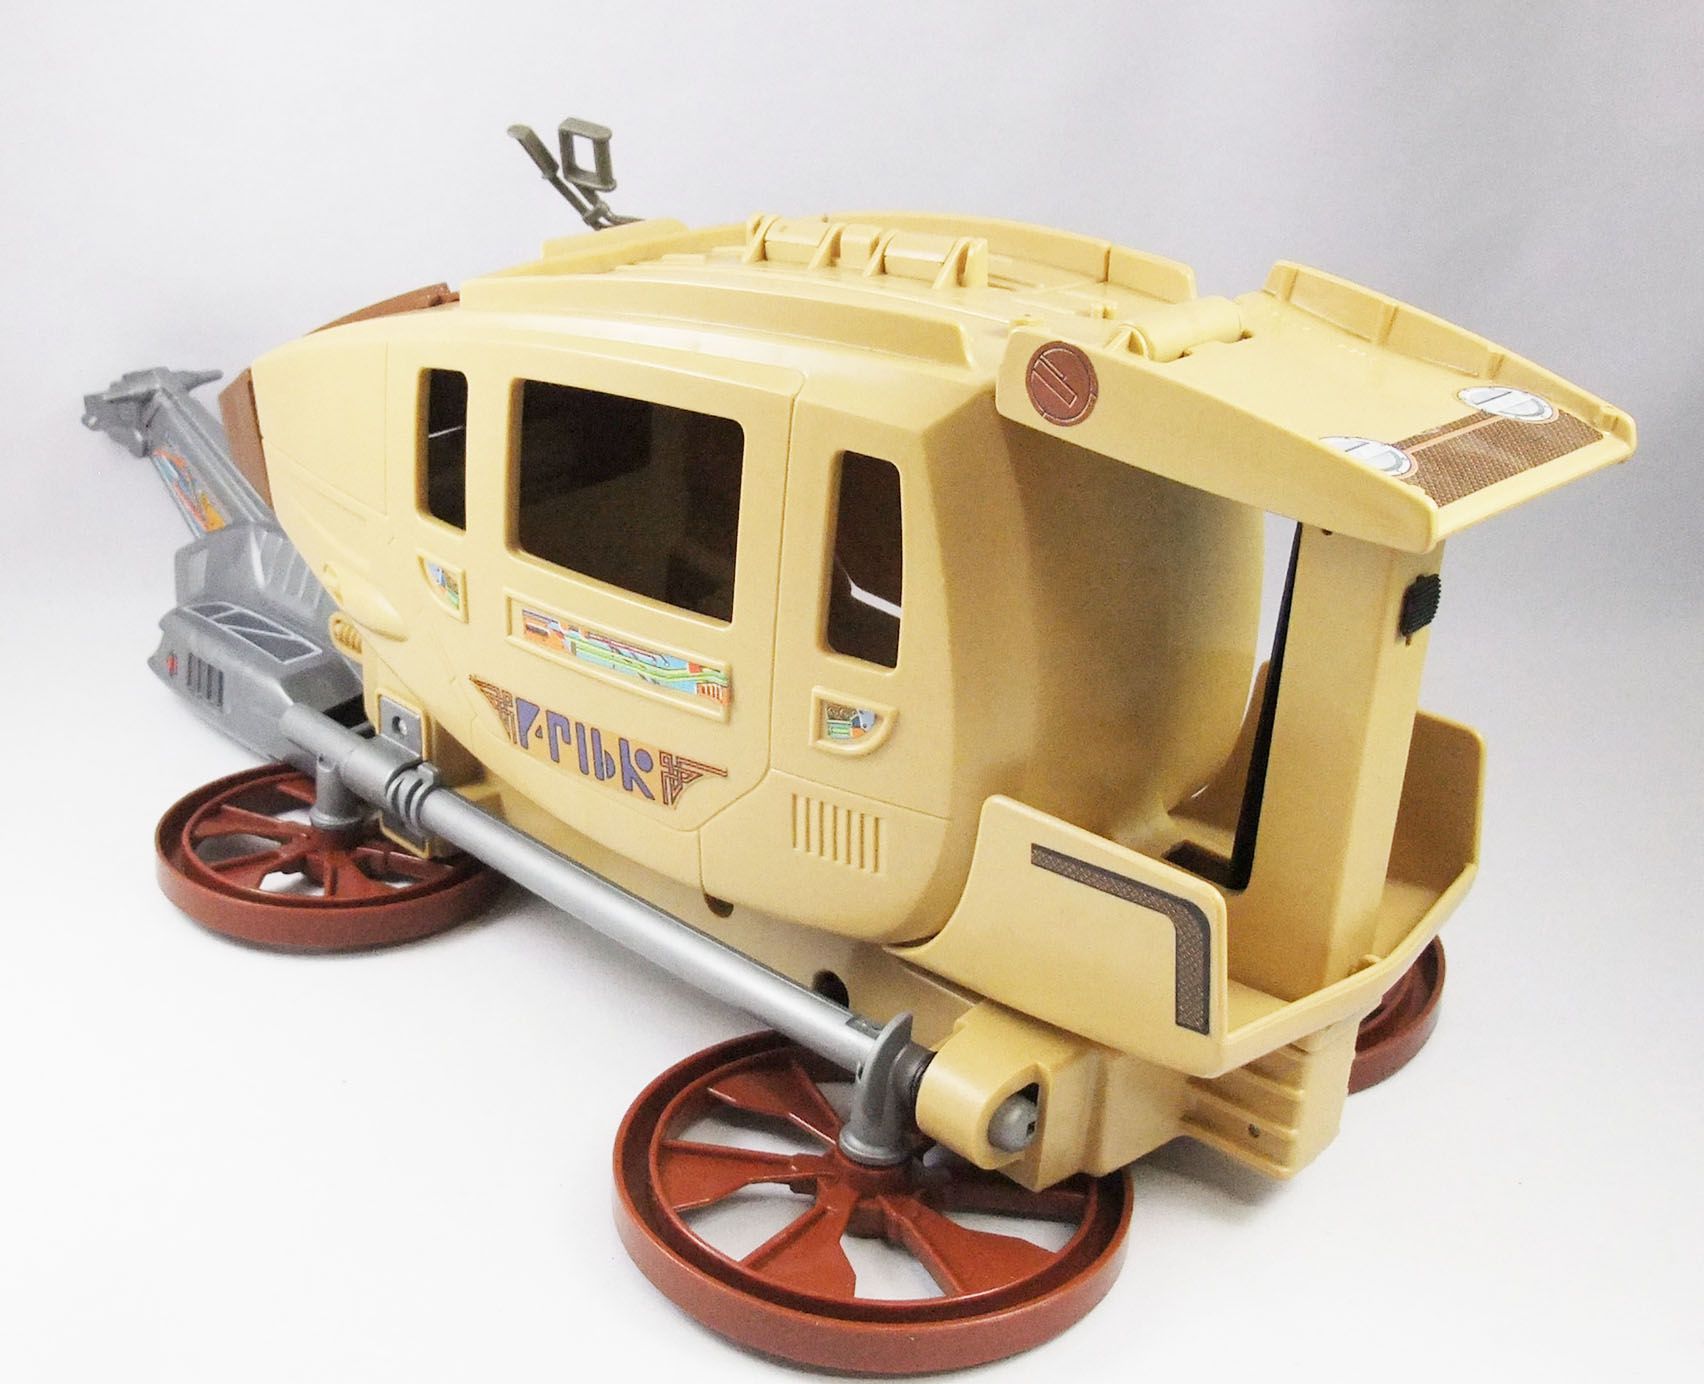 Bravestarr Stratocoach Mattel 1986 Mattel -  Canada